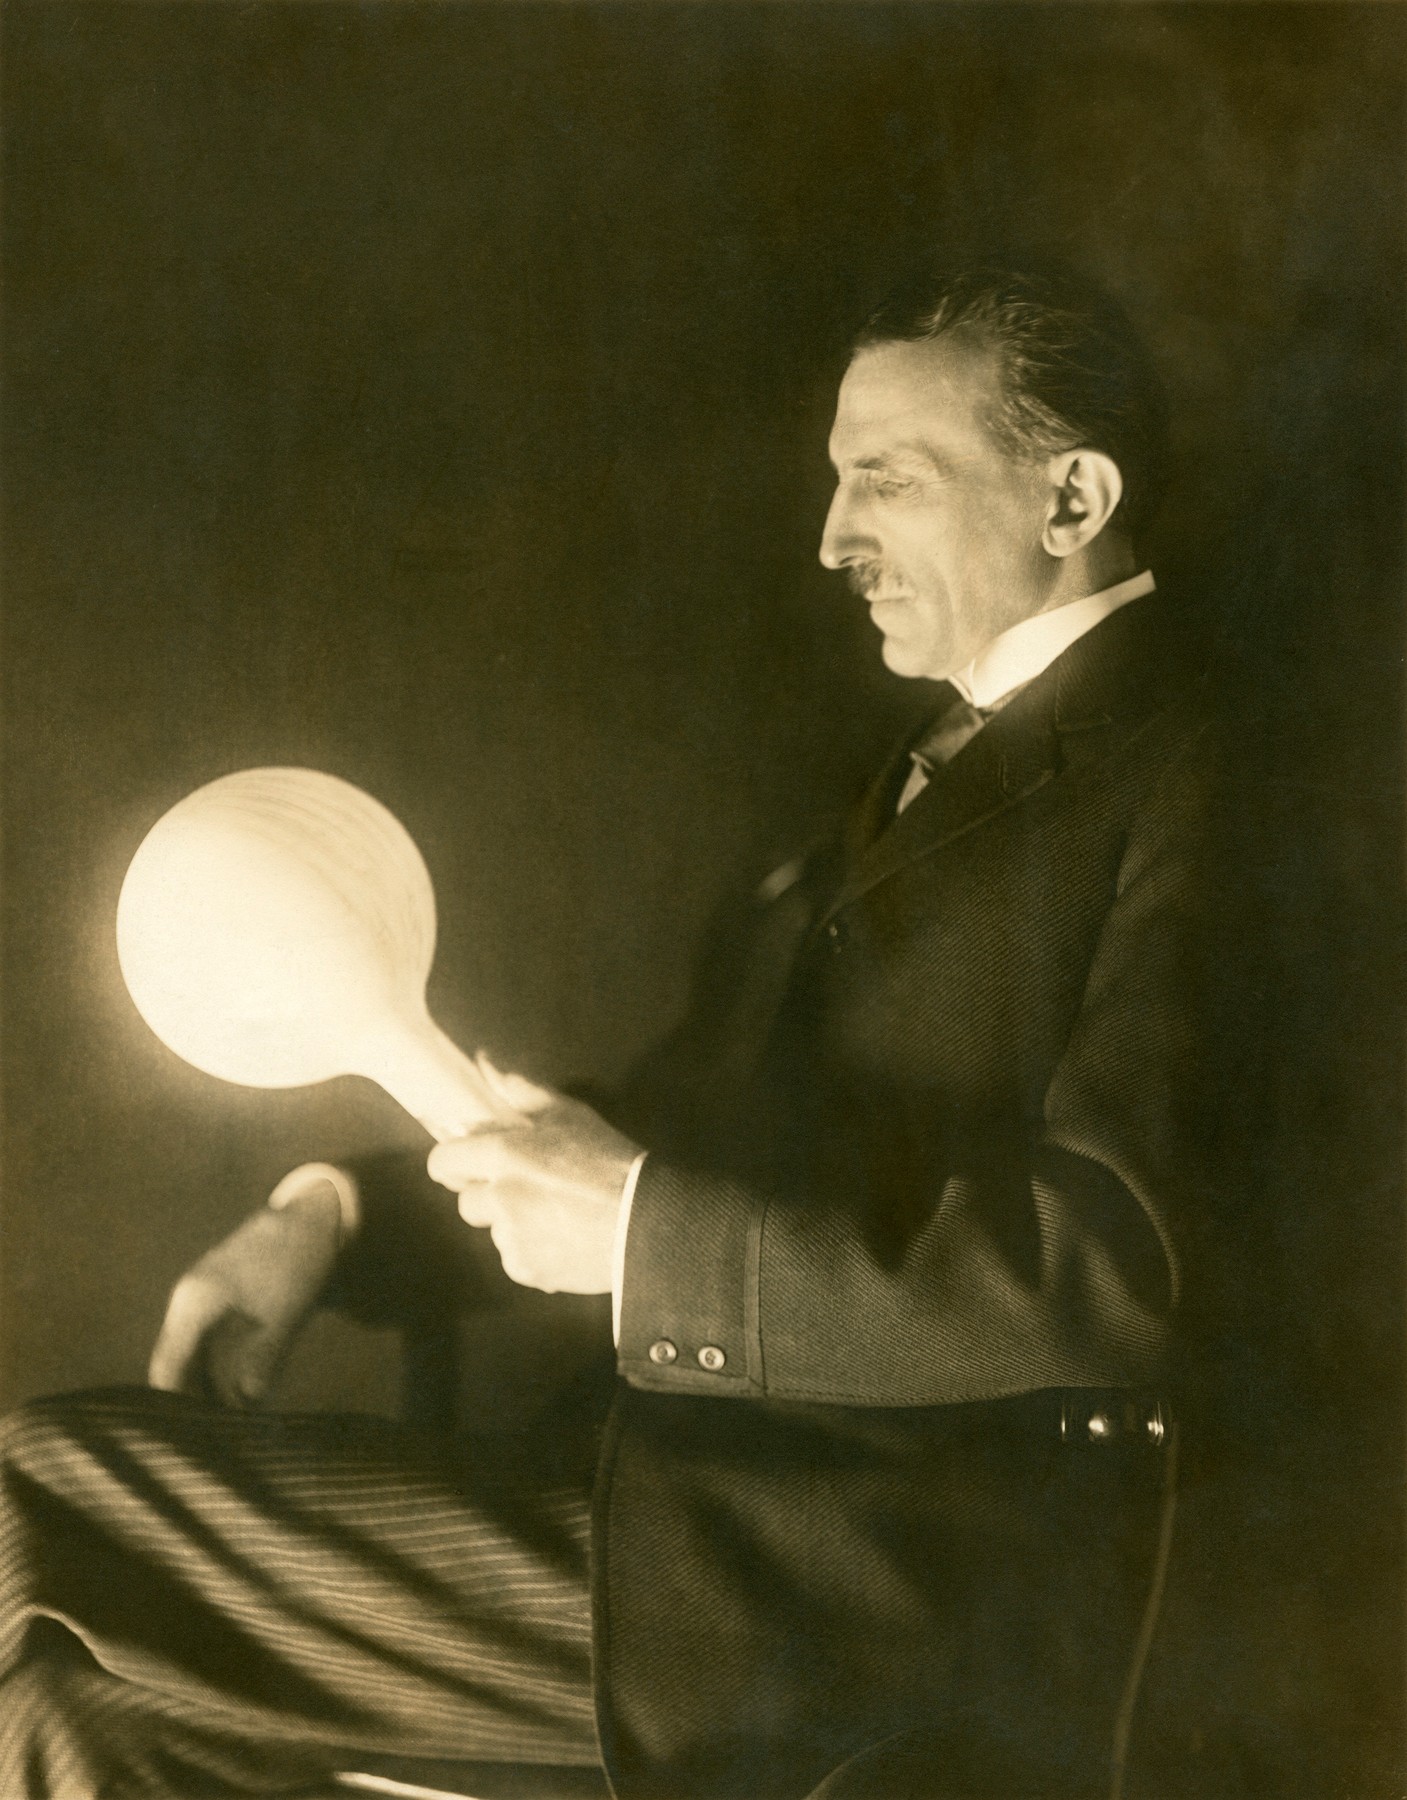 Tesla fotografiran sa svojom bežičnom žaruljom premazanom fosforom. Žarulju je izradio 1890-ih godina, otkad datira i ova fotografija.